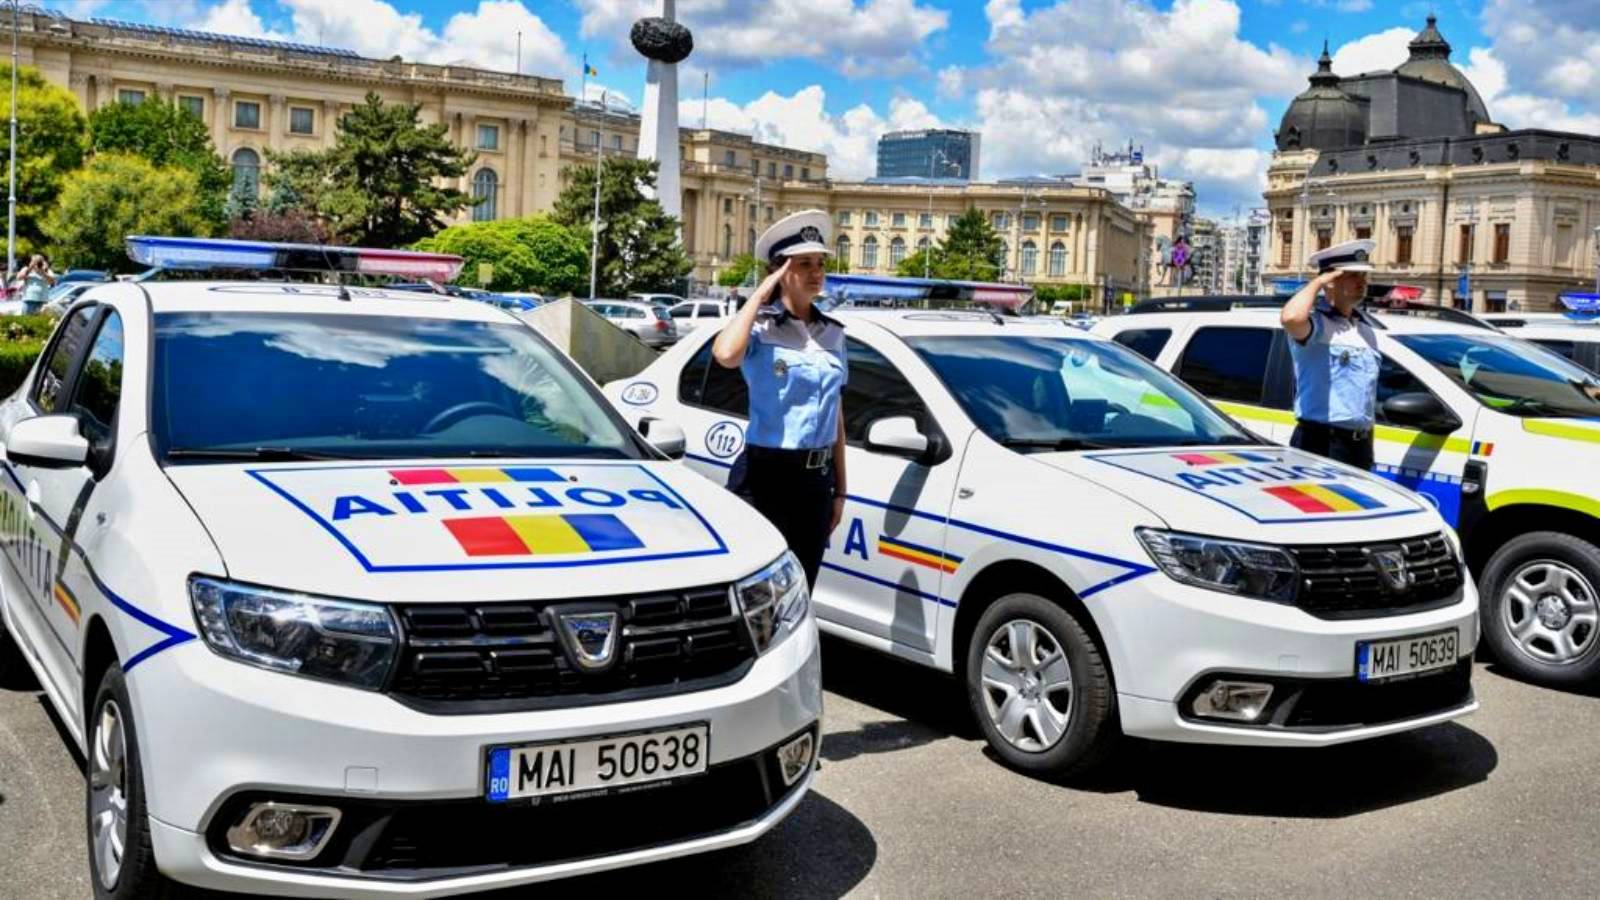 Romanian poliisin vaara Huomio kaikki romanialaiset